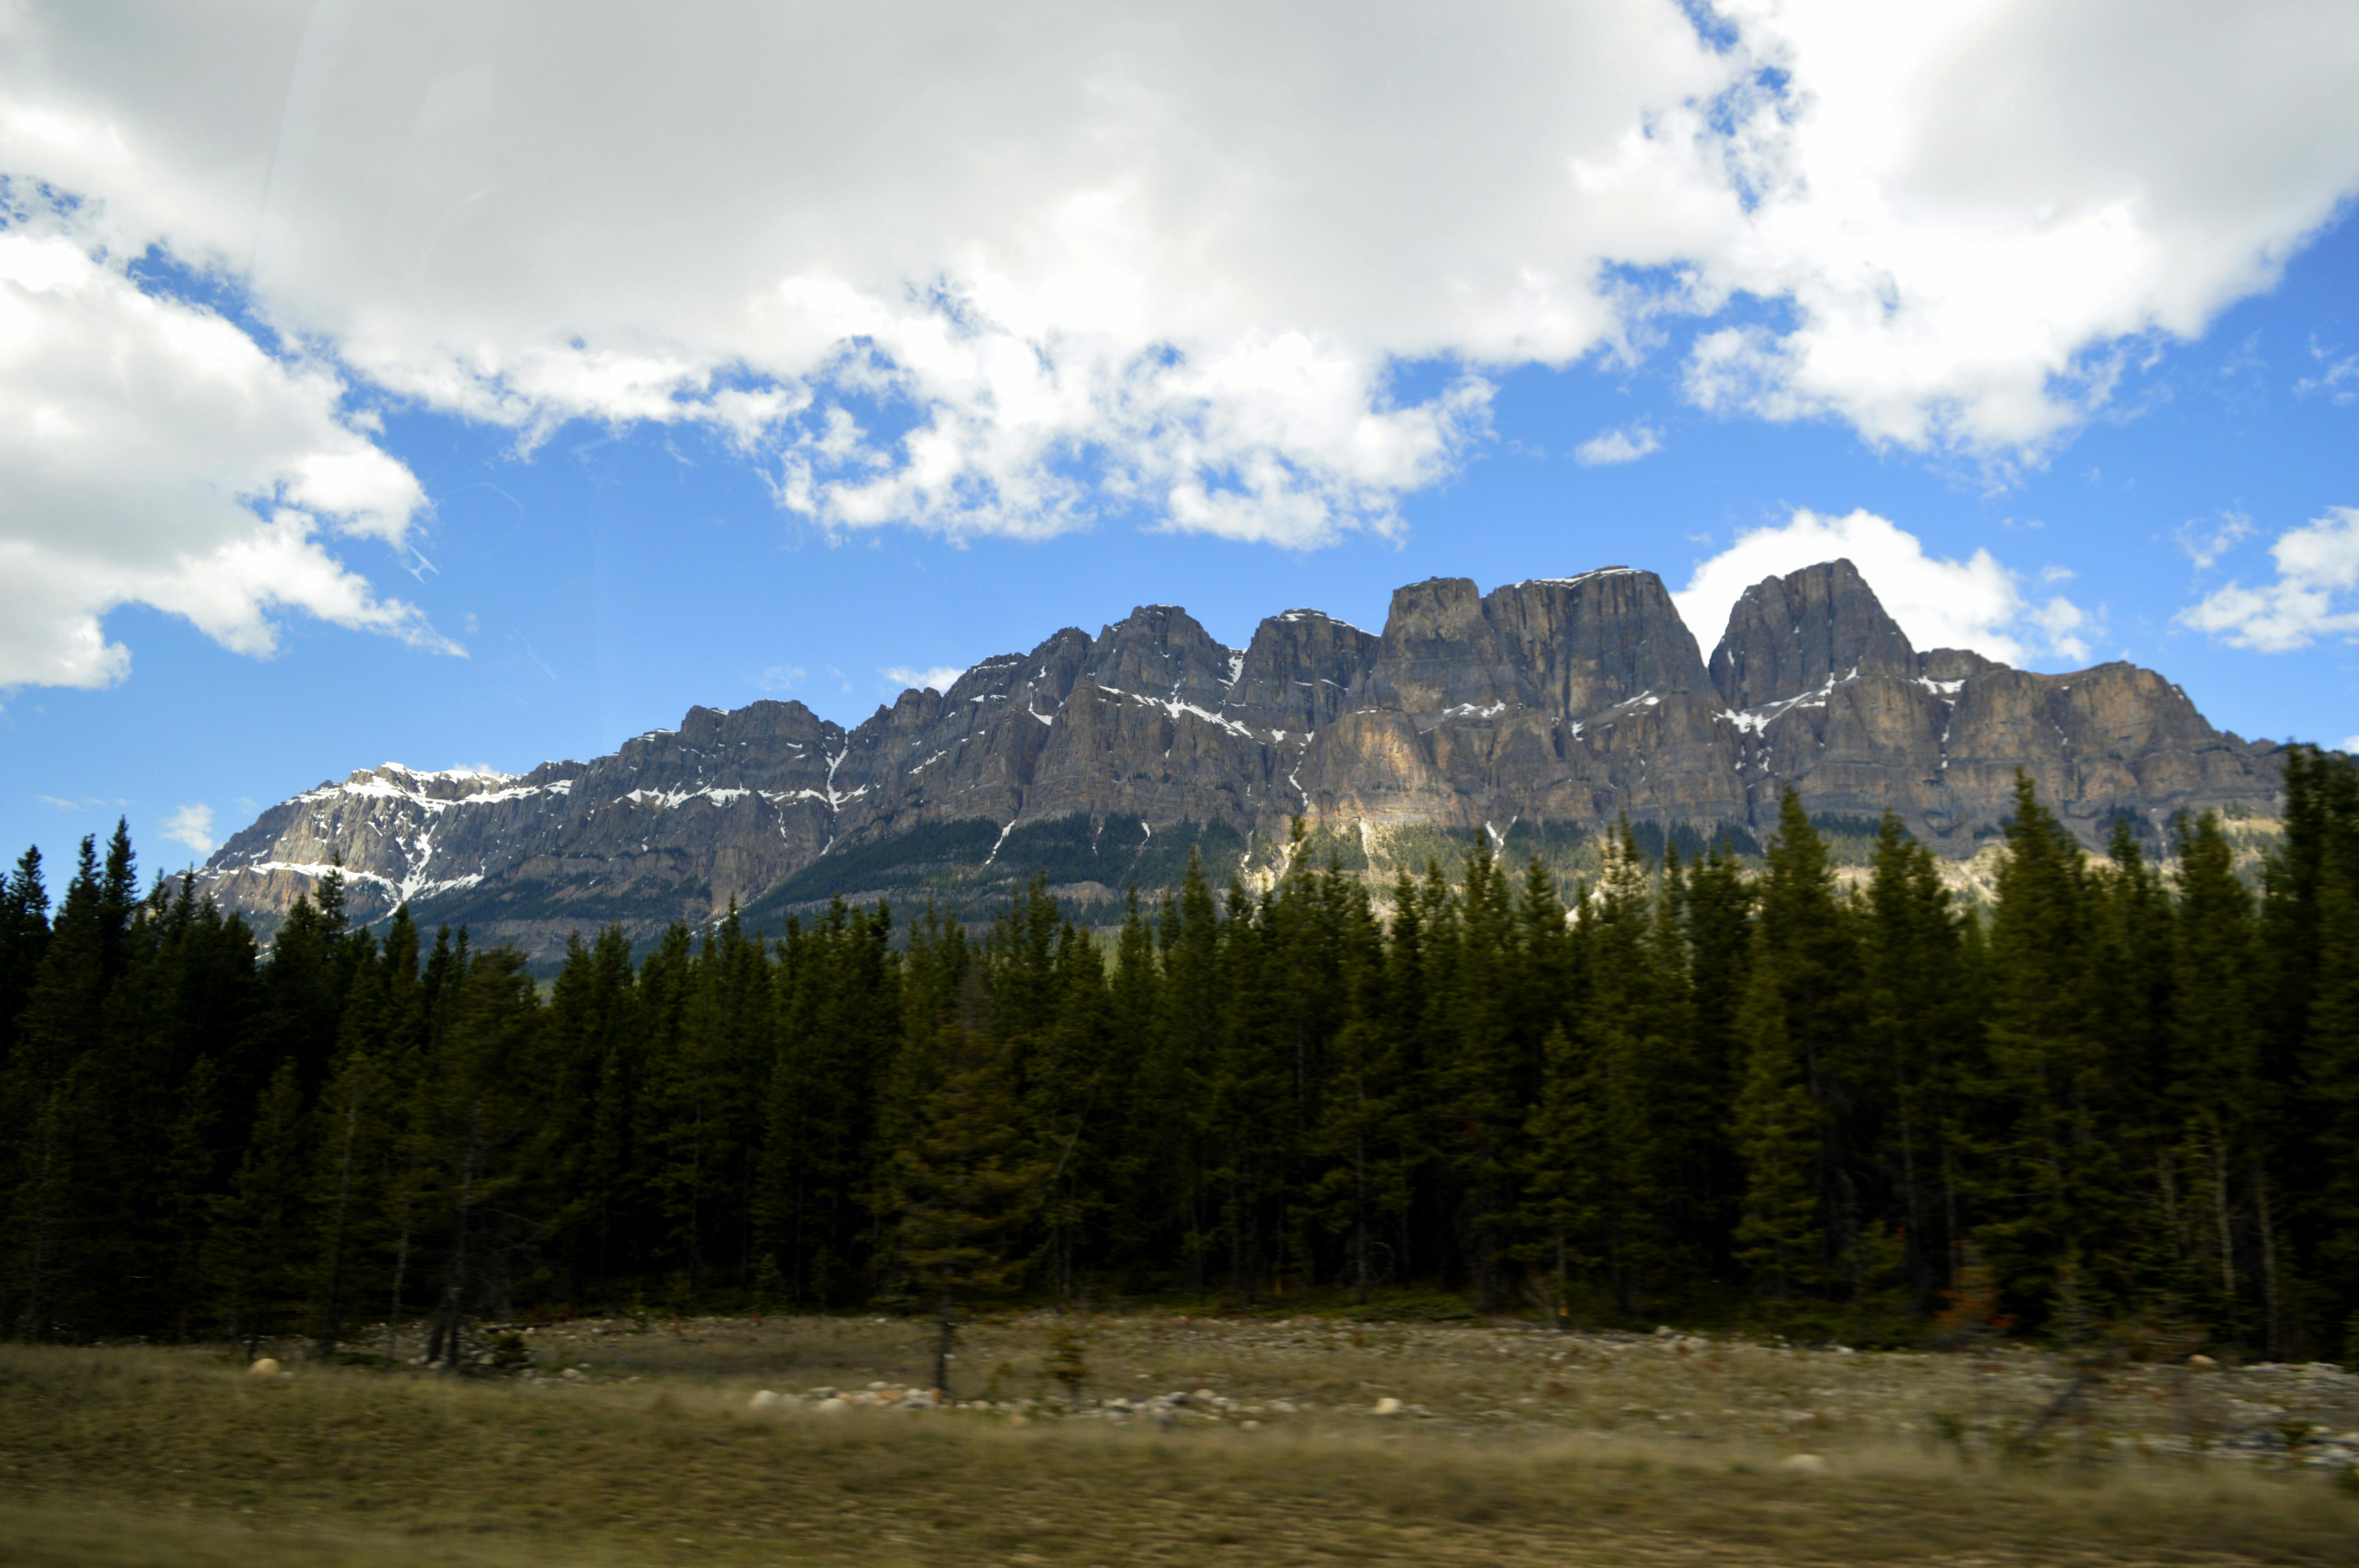 Free stock photo of blue mountains, mountains, rocky mountain